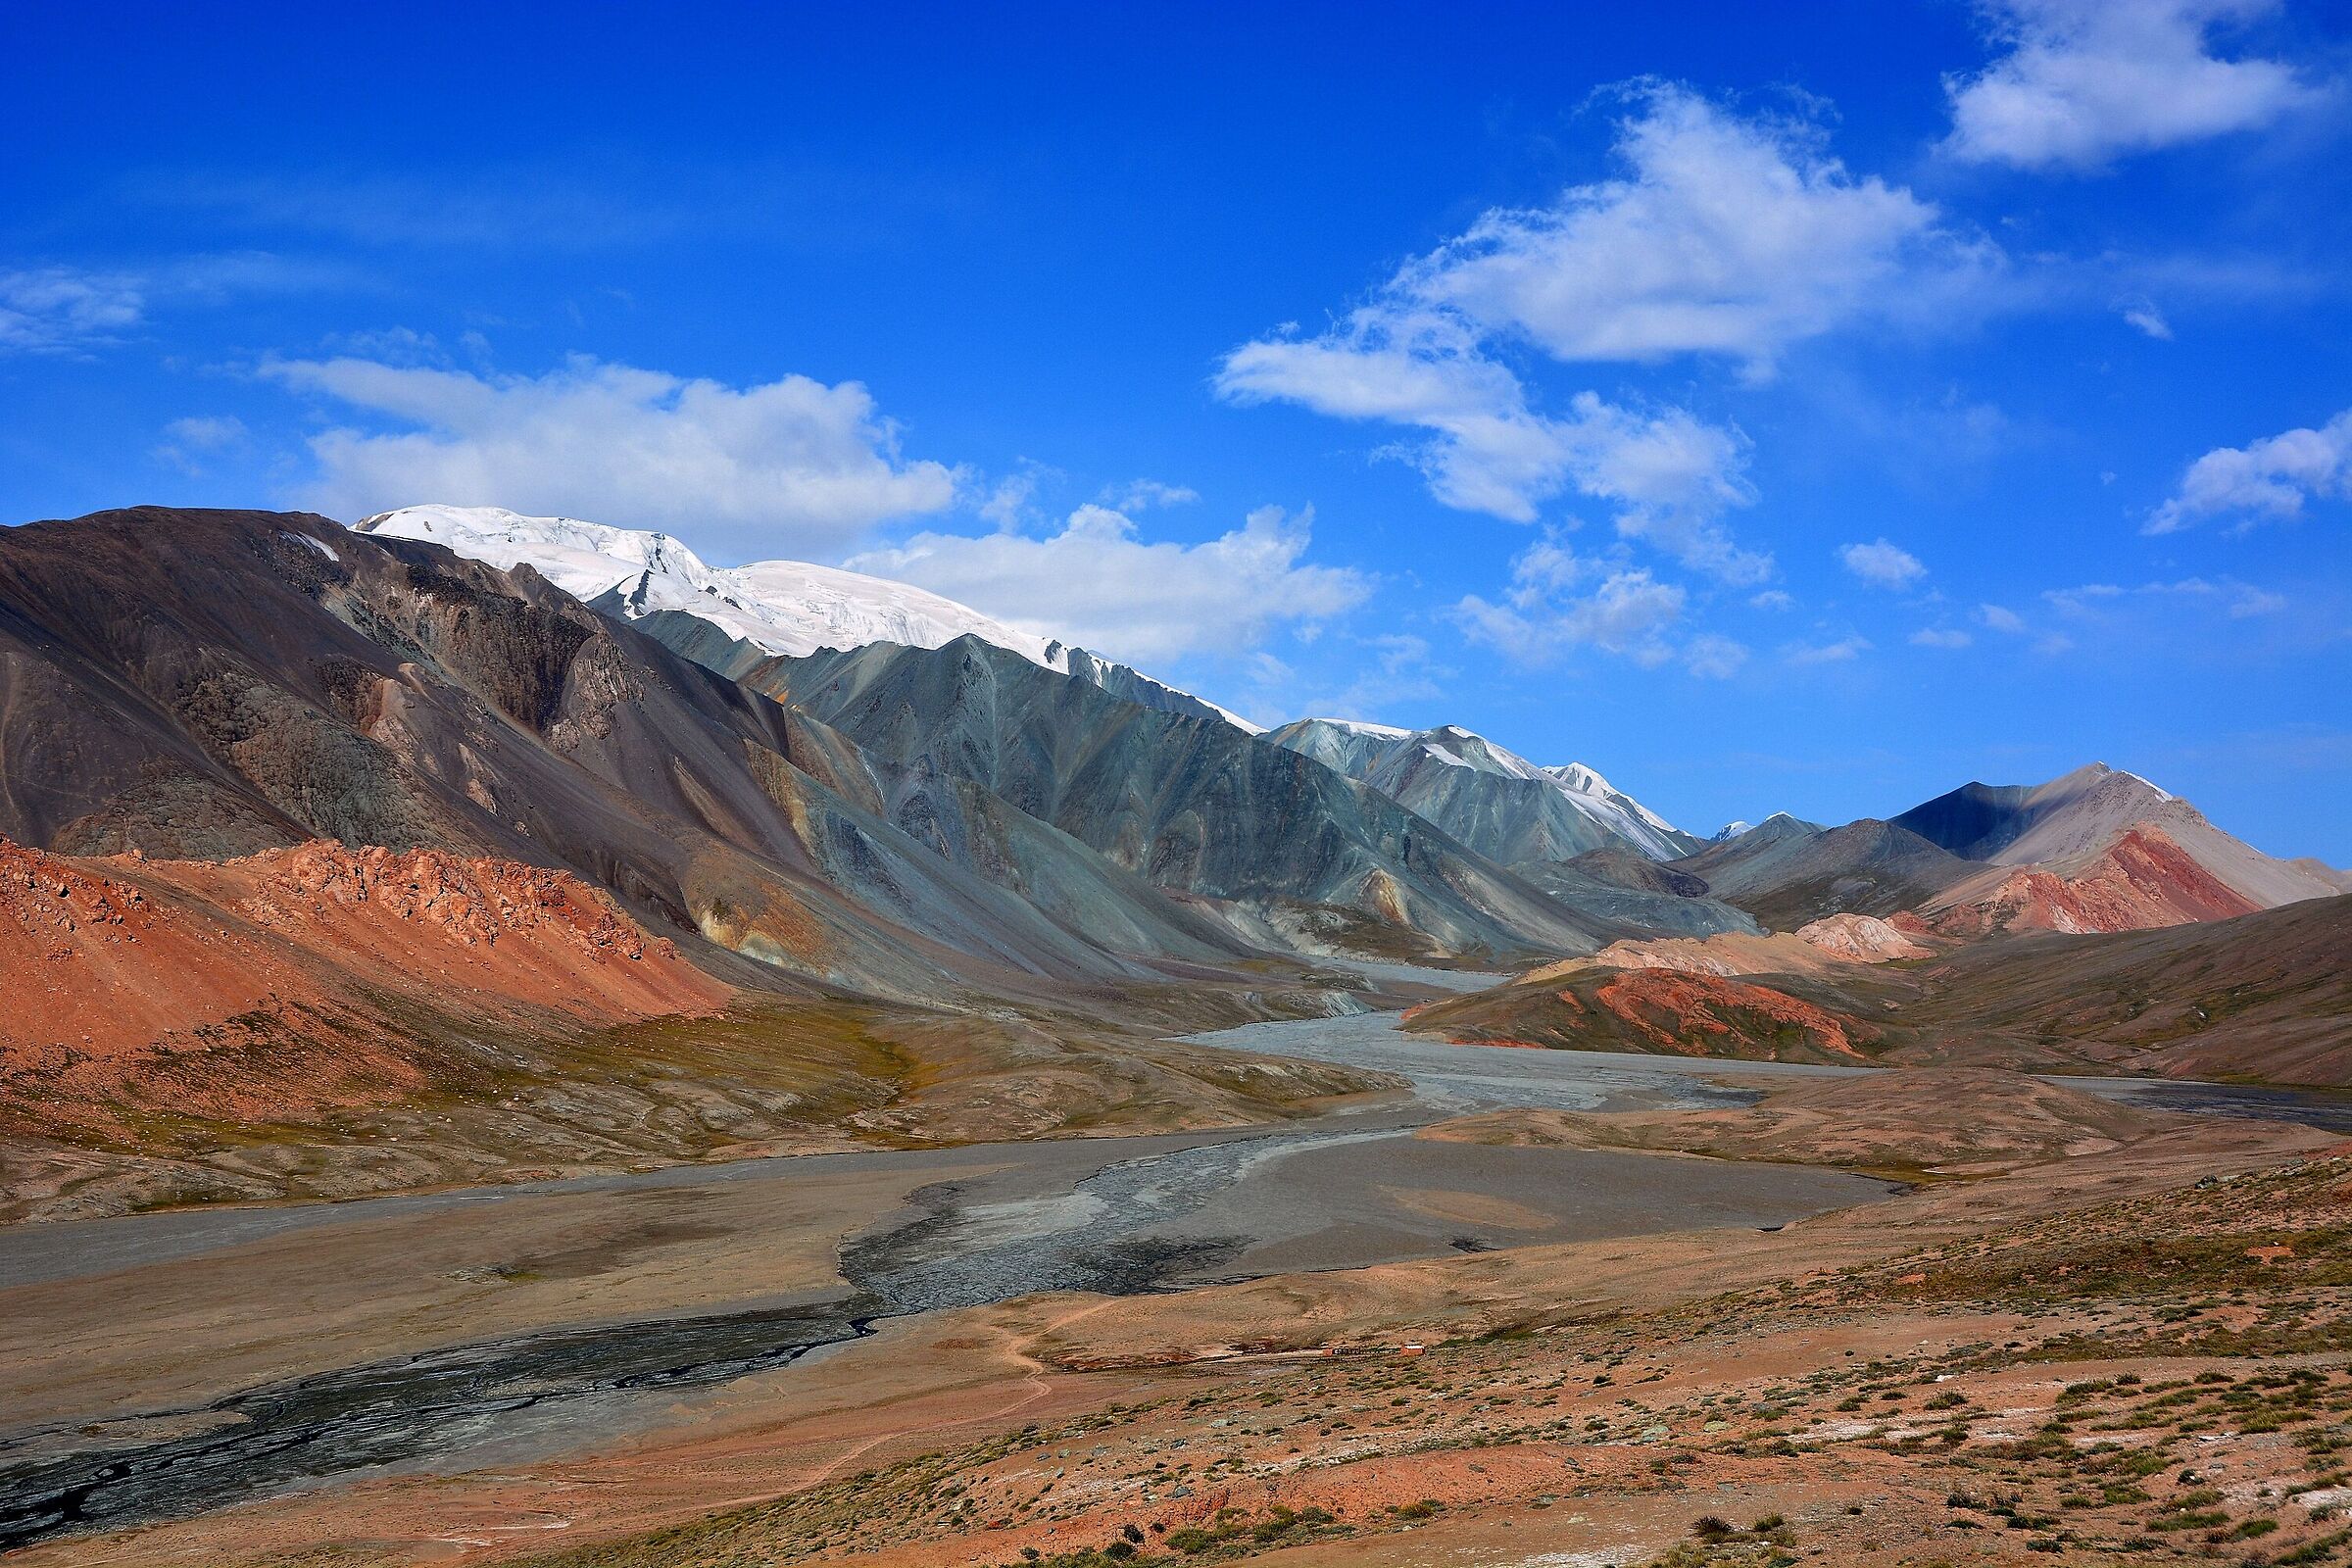 Tajikistan - La "Terra di nessuno" al confine kyrghizo....